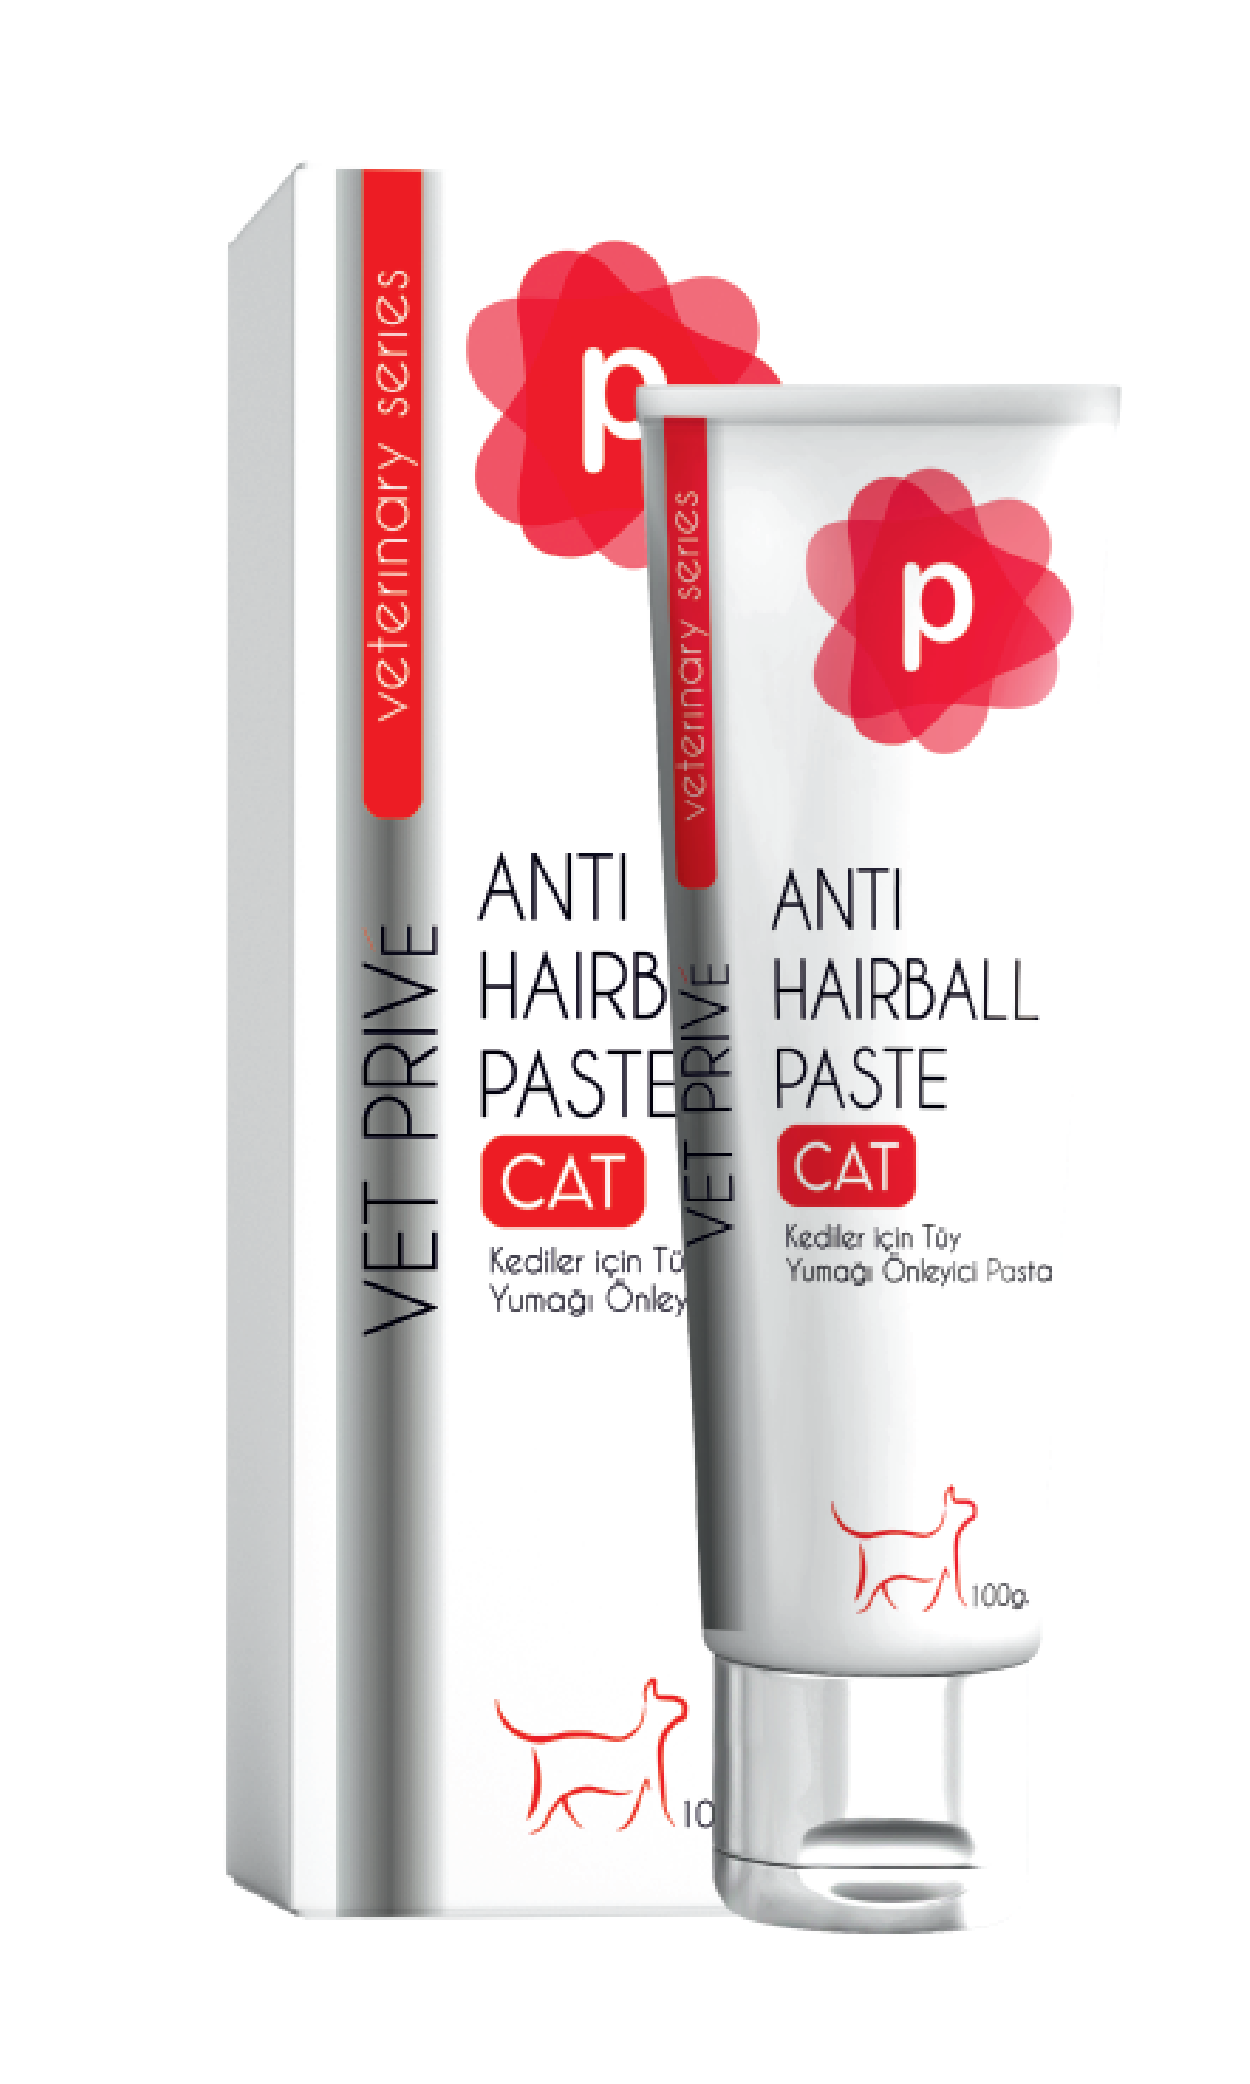 Beta Peth | Antihairball Paste